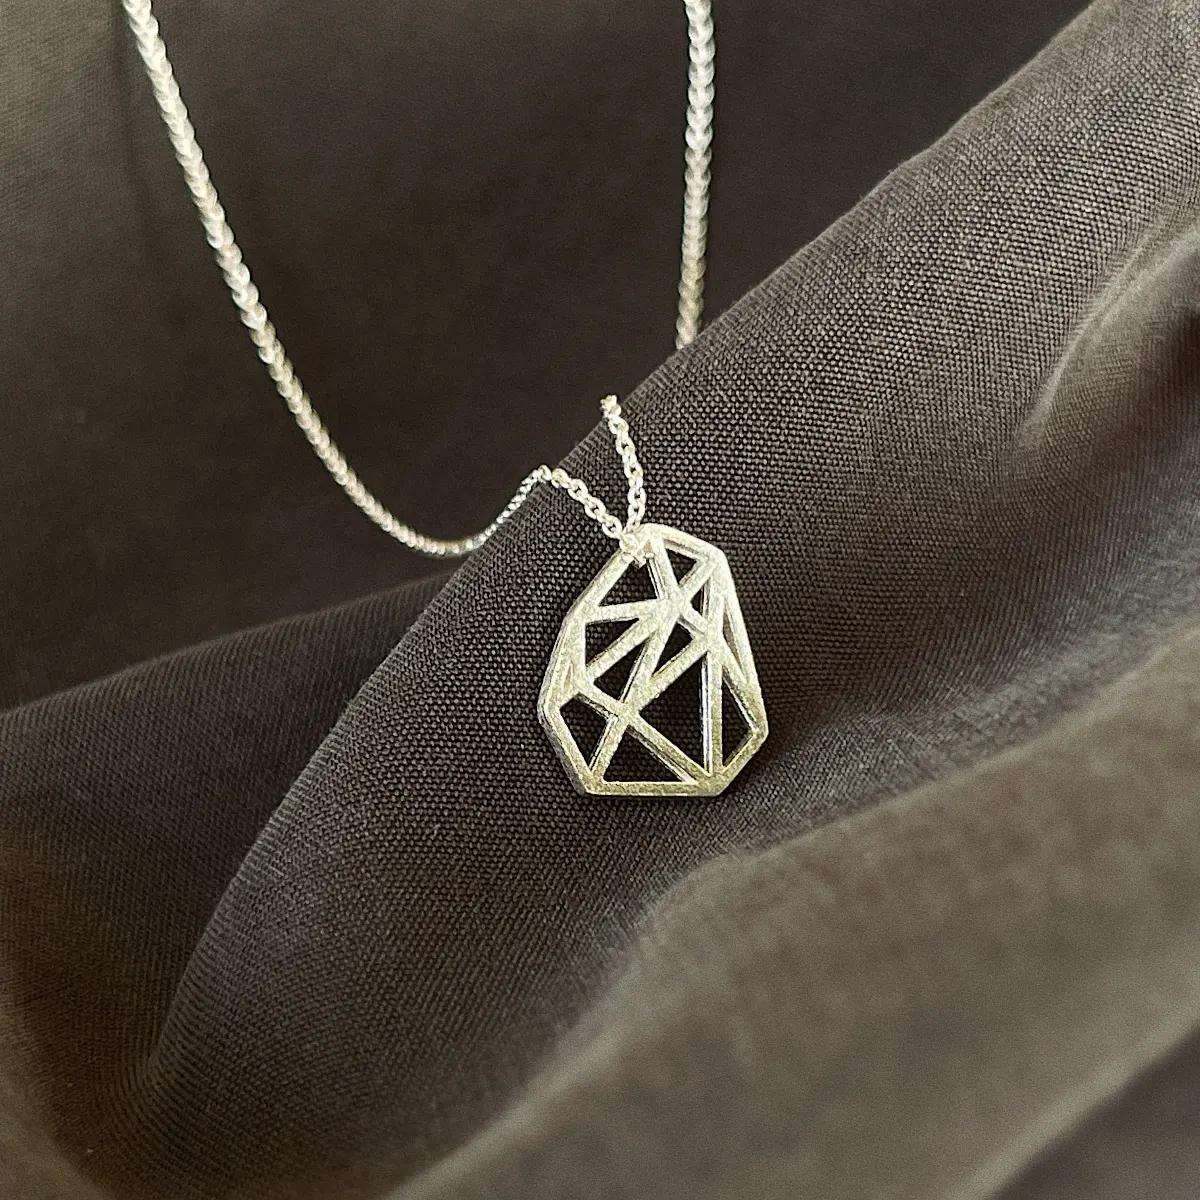 Le pendentif en forme de polygone de ce collier a une signification particulière pour nous. Il ressemble à un tesson de minerai, symbole de Kamena. Ce collier vous conviendra parfaitement si vous aimez les accessoires subtils.
Le collier est en